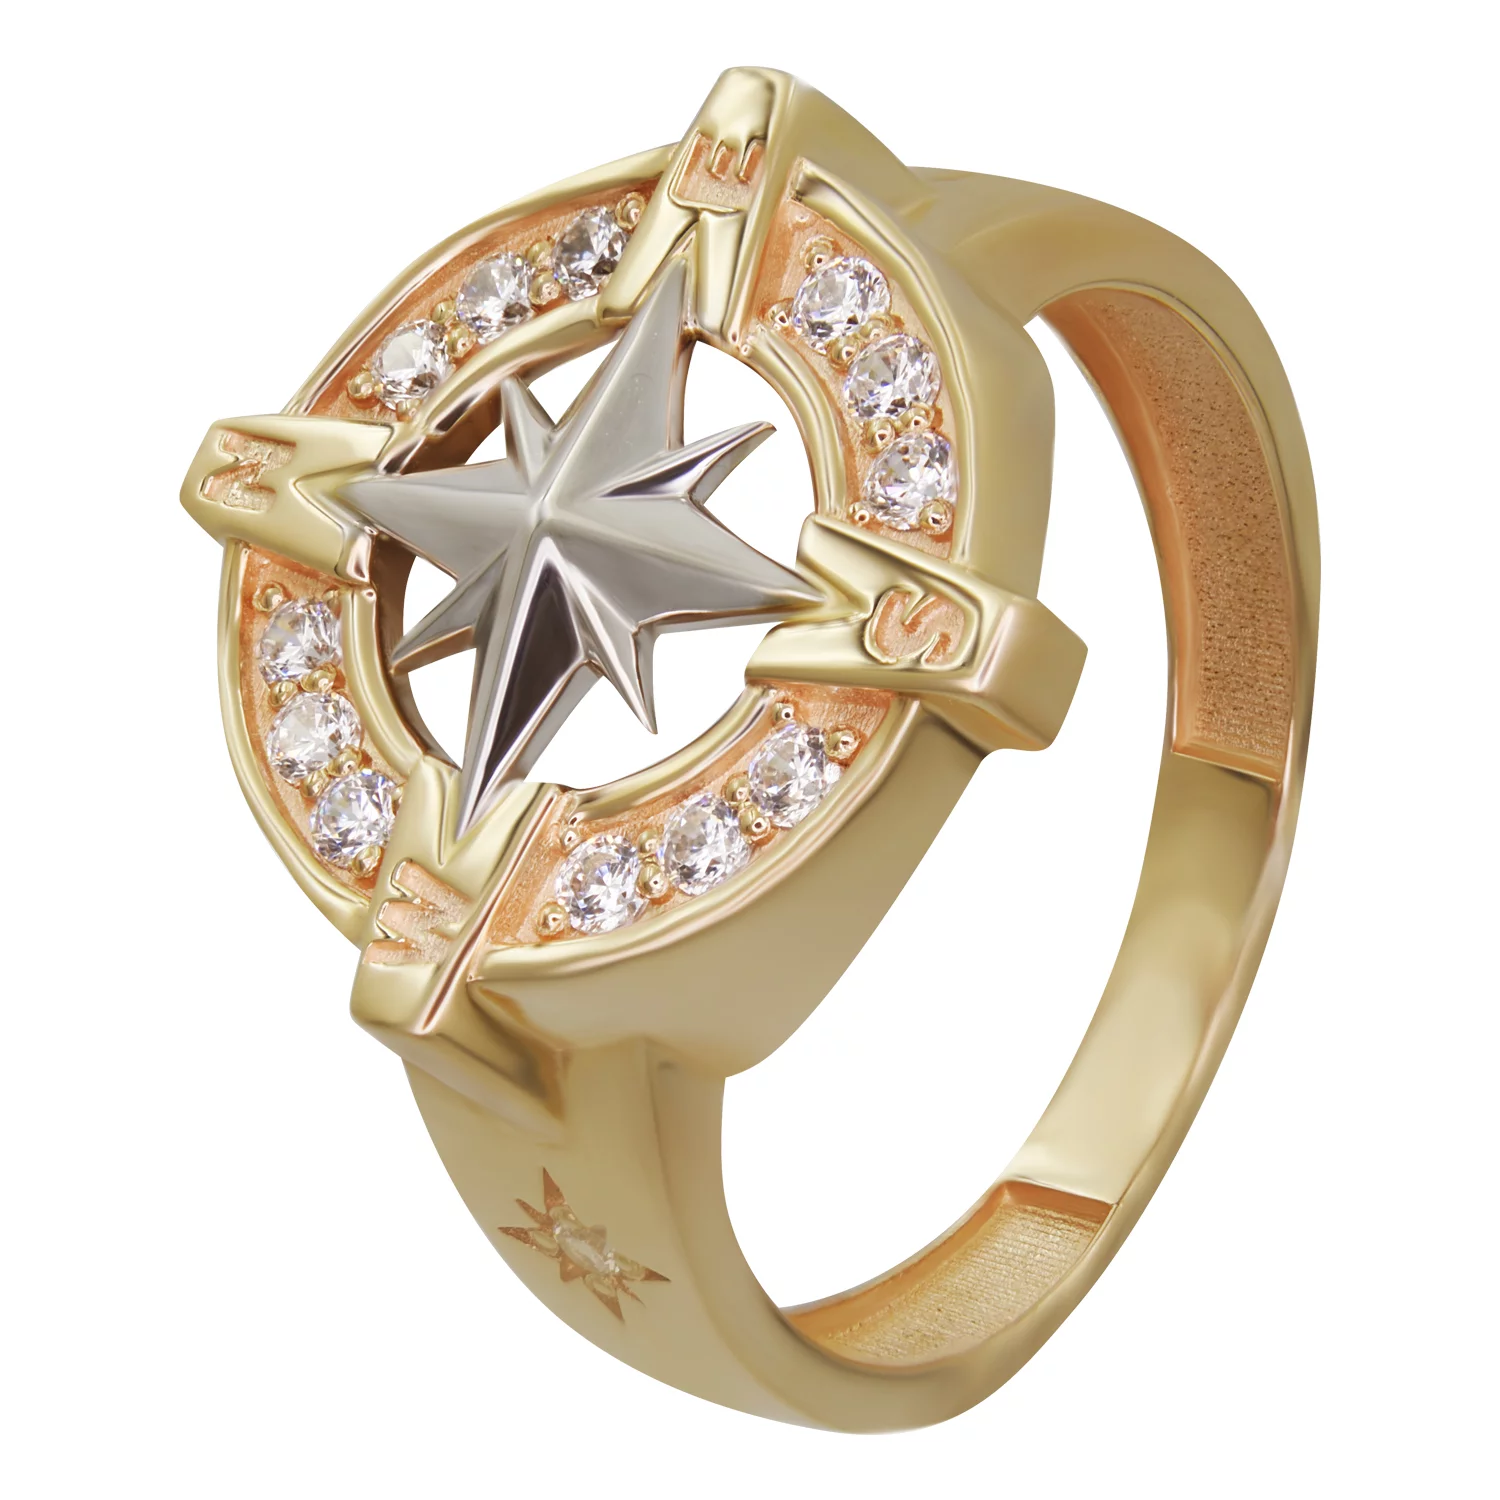 Перстень из красного золота с фианитом Компас. Артикул КП001: цена, отзывы, фото – купить в интернет-магазине AURUM